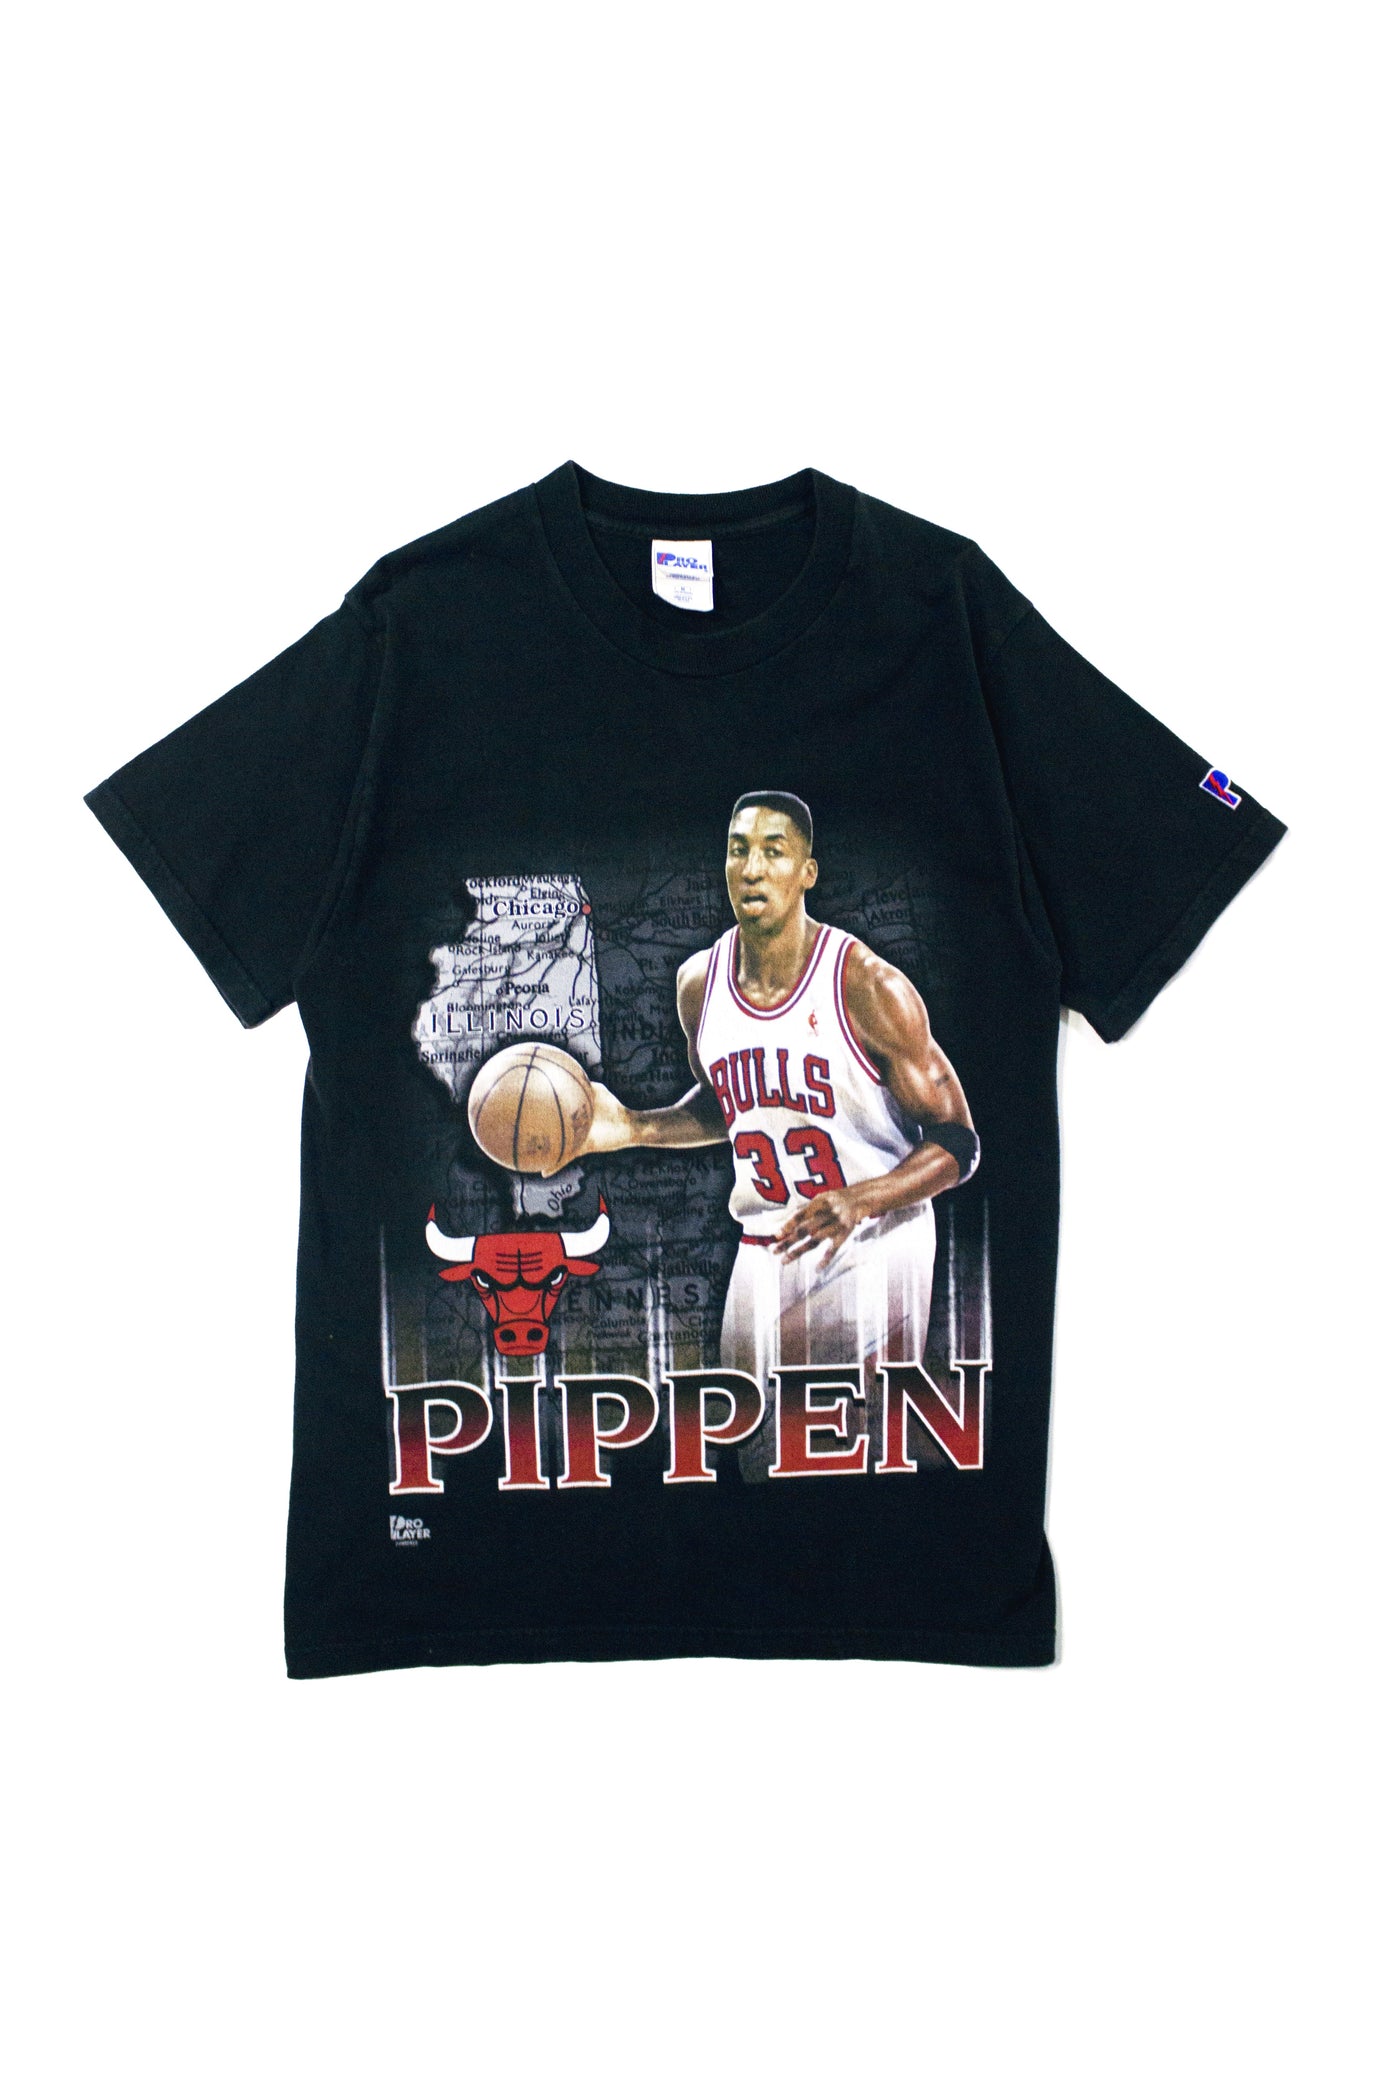 Vintage 90s Pro Player Scottie Pippen T-Shirt